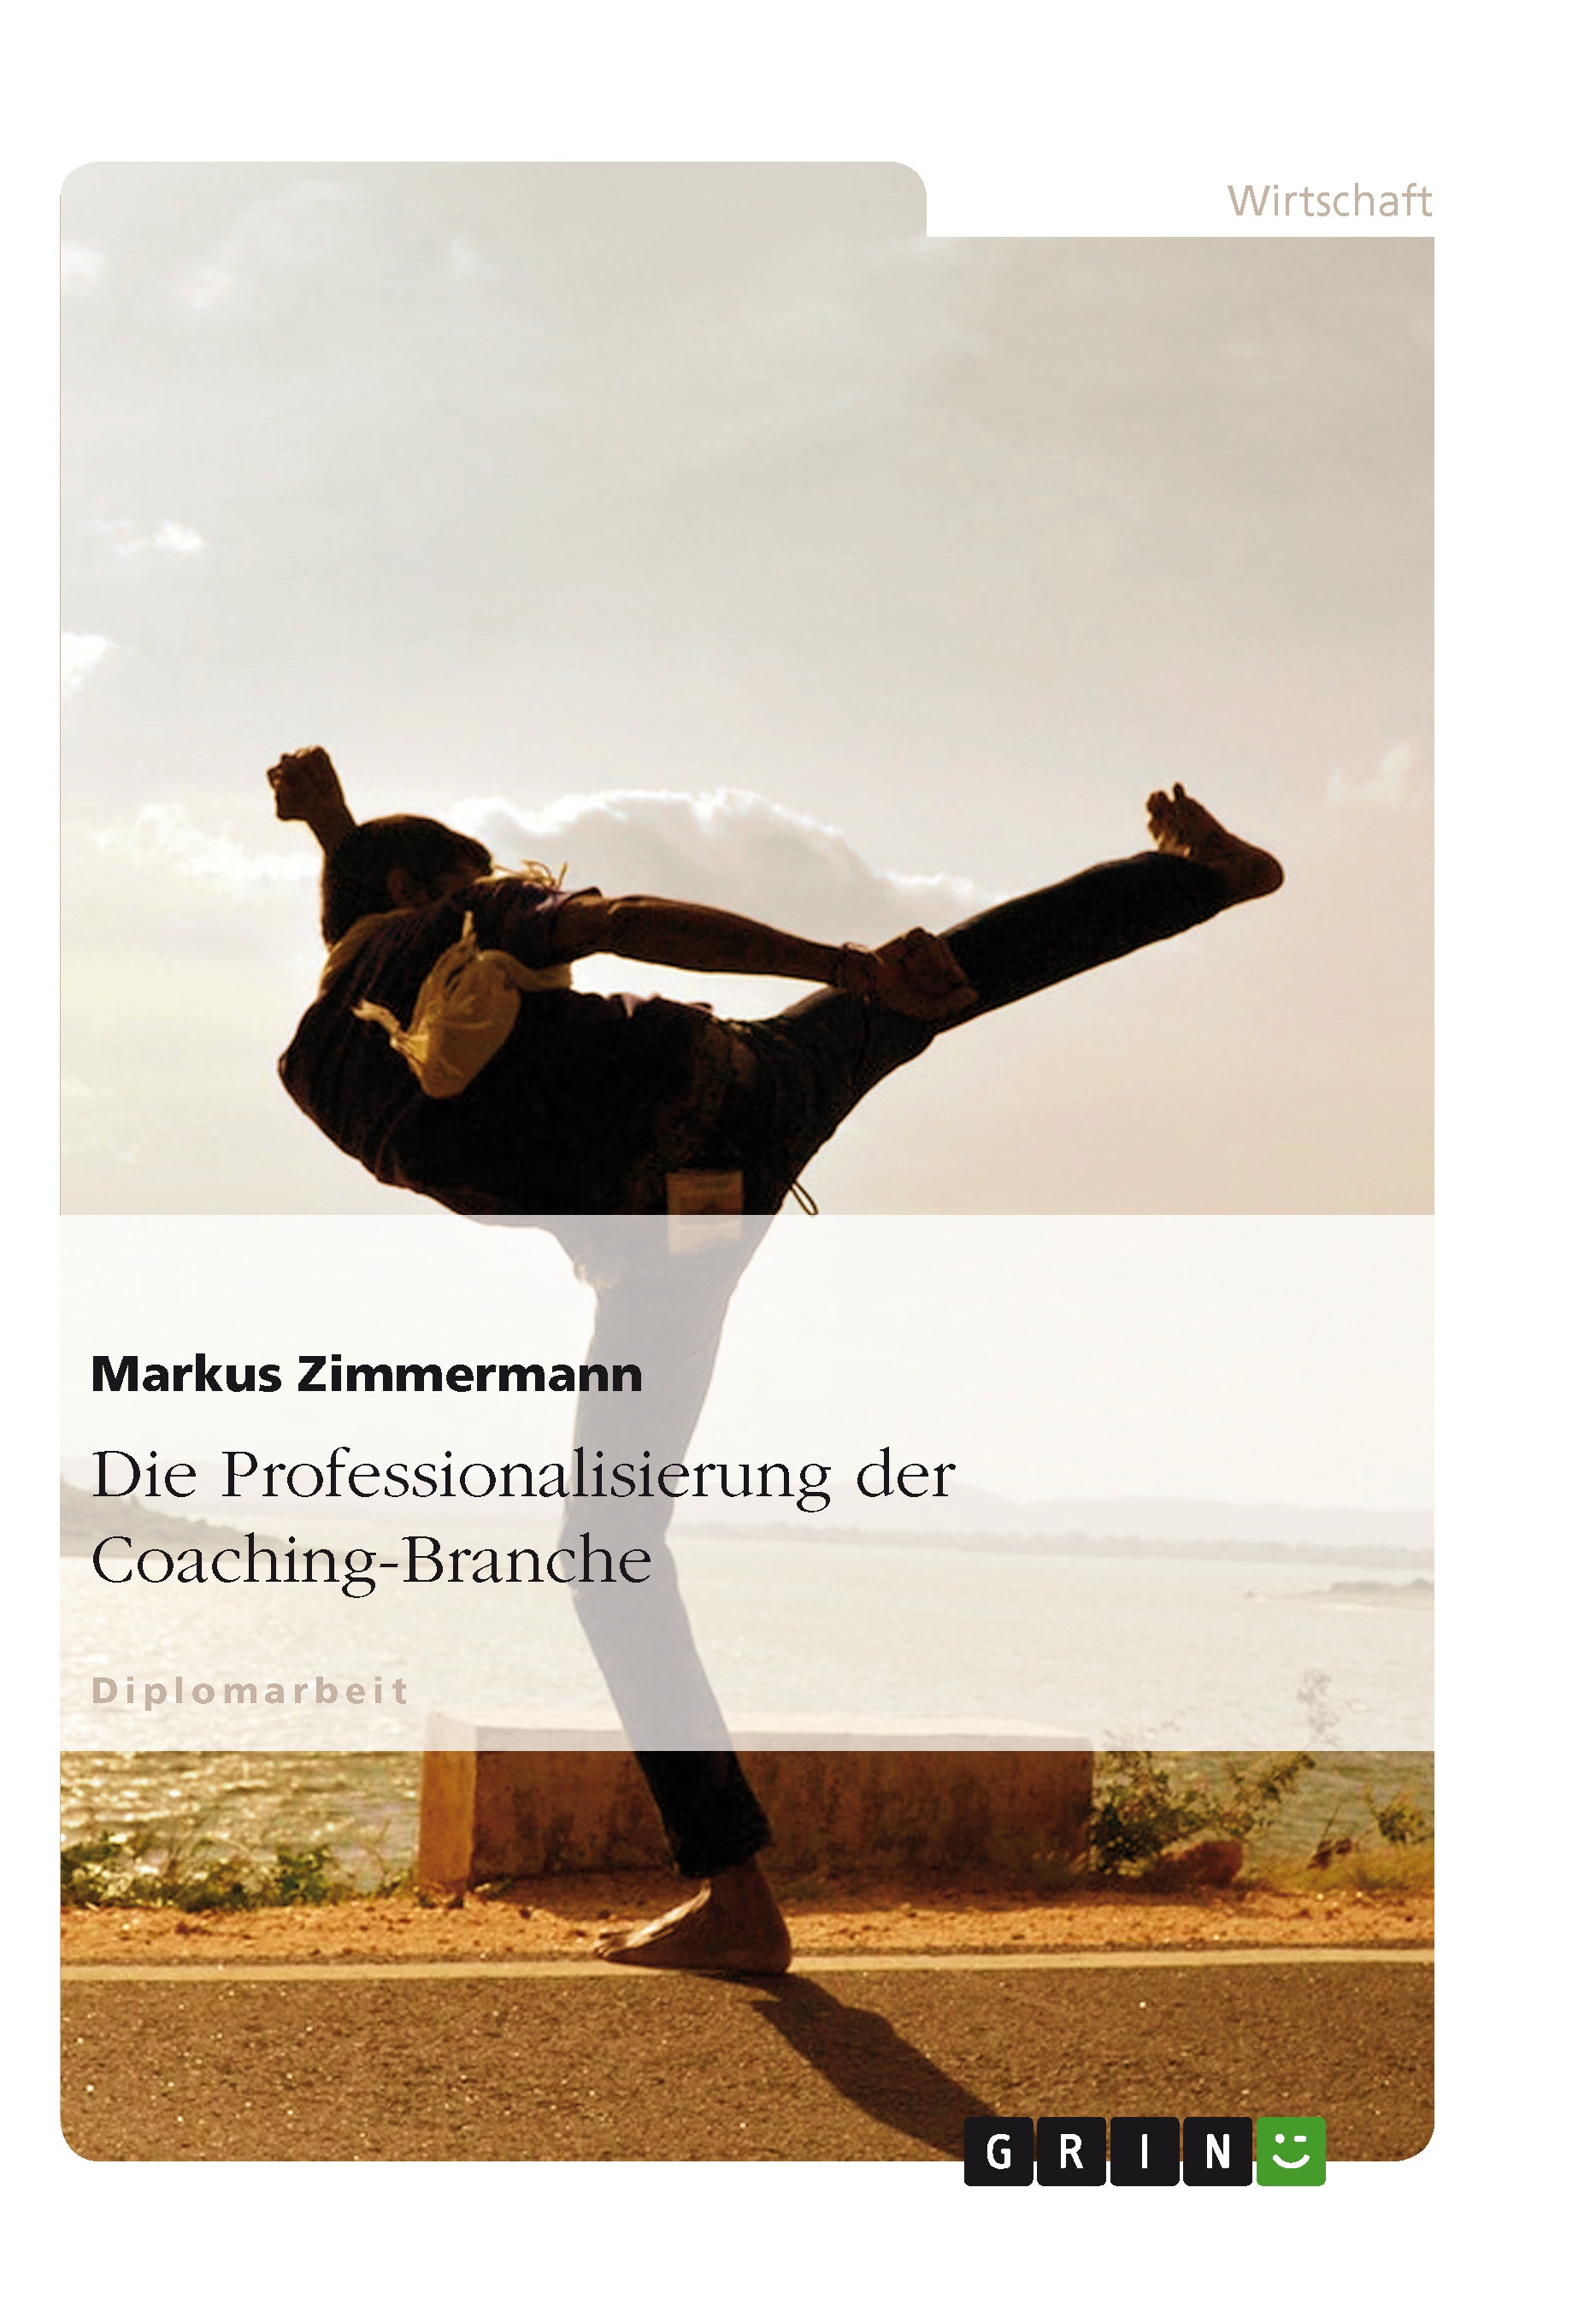 Título: Die Professionalisierung der Coaching-Branche